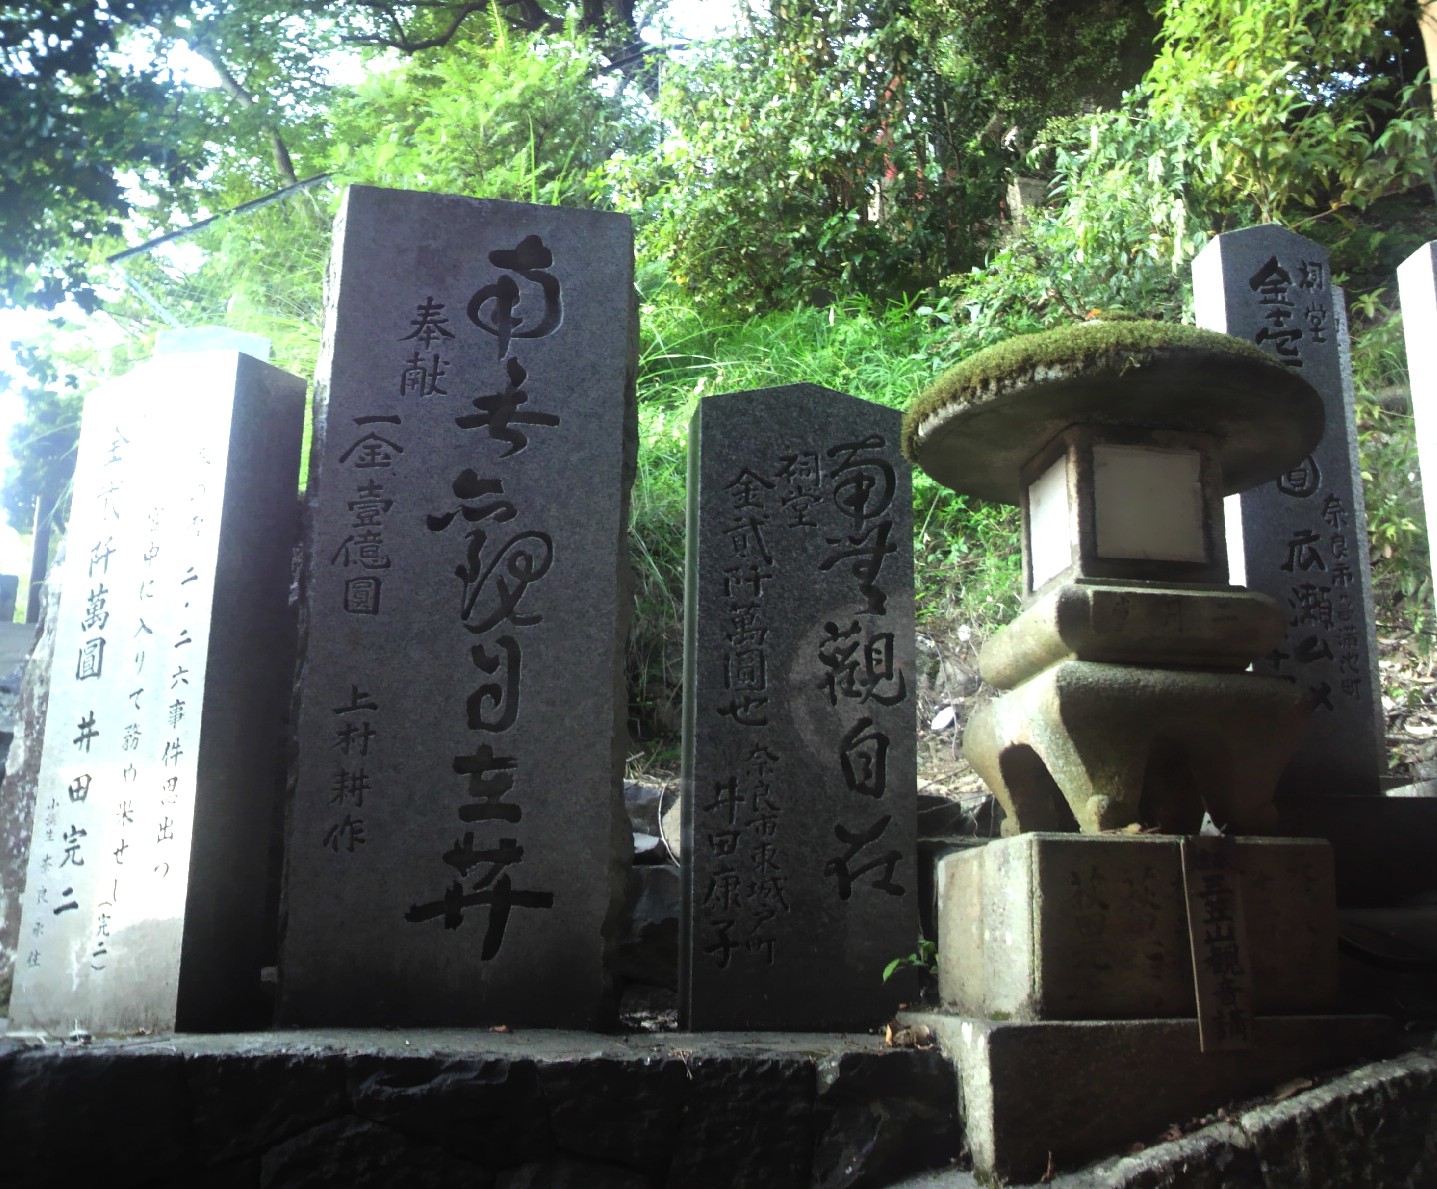 東大寺二月堂に井田康子先生の寄贈石碑